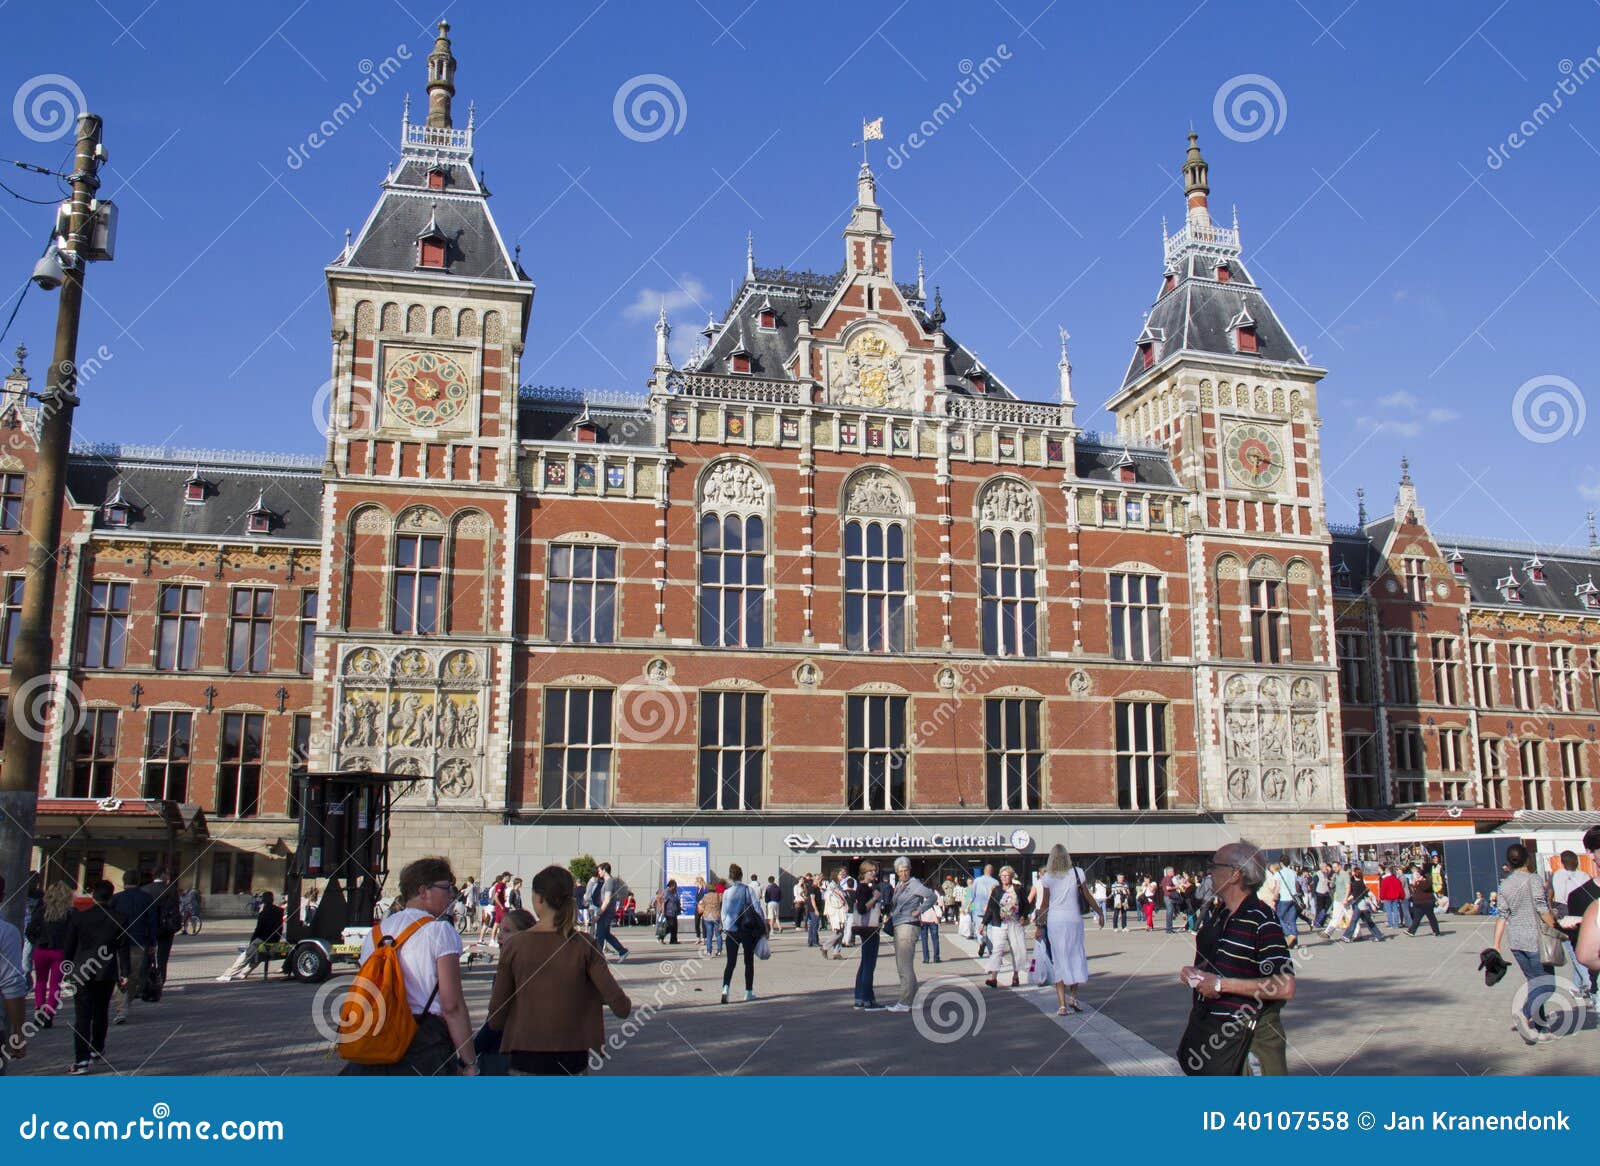 AmsterdamHauptbahnhof redaktionelles stockfoto. Bild von